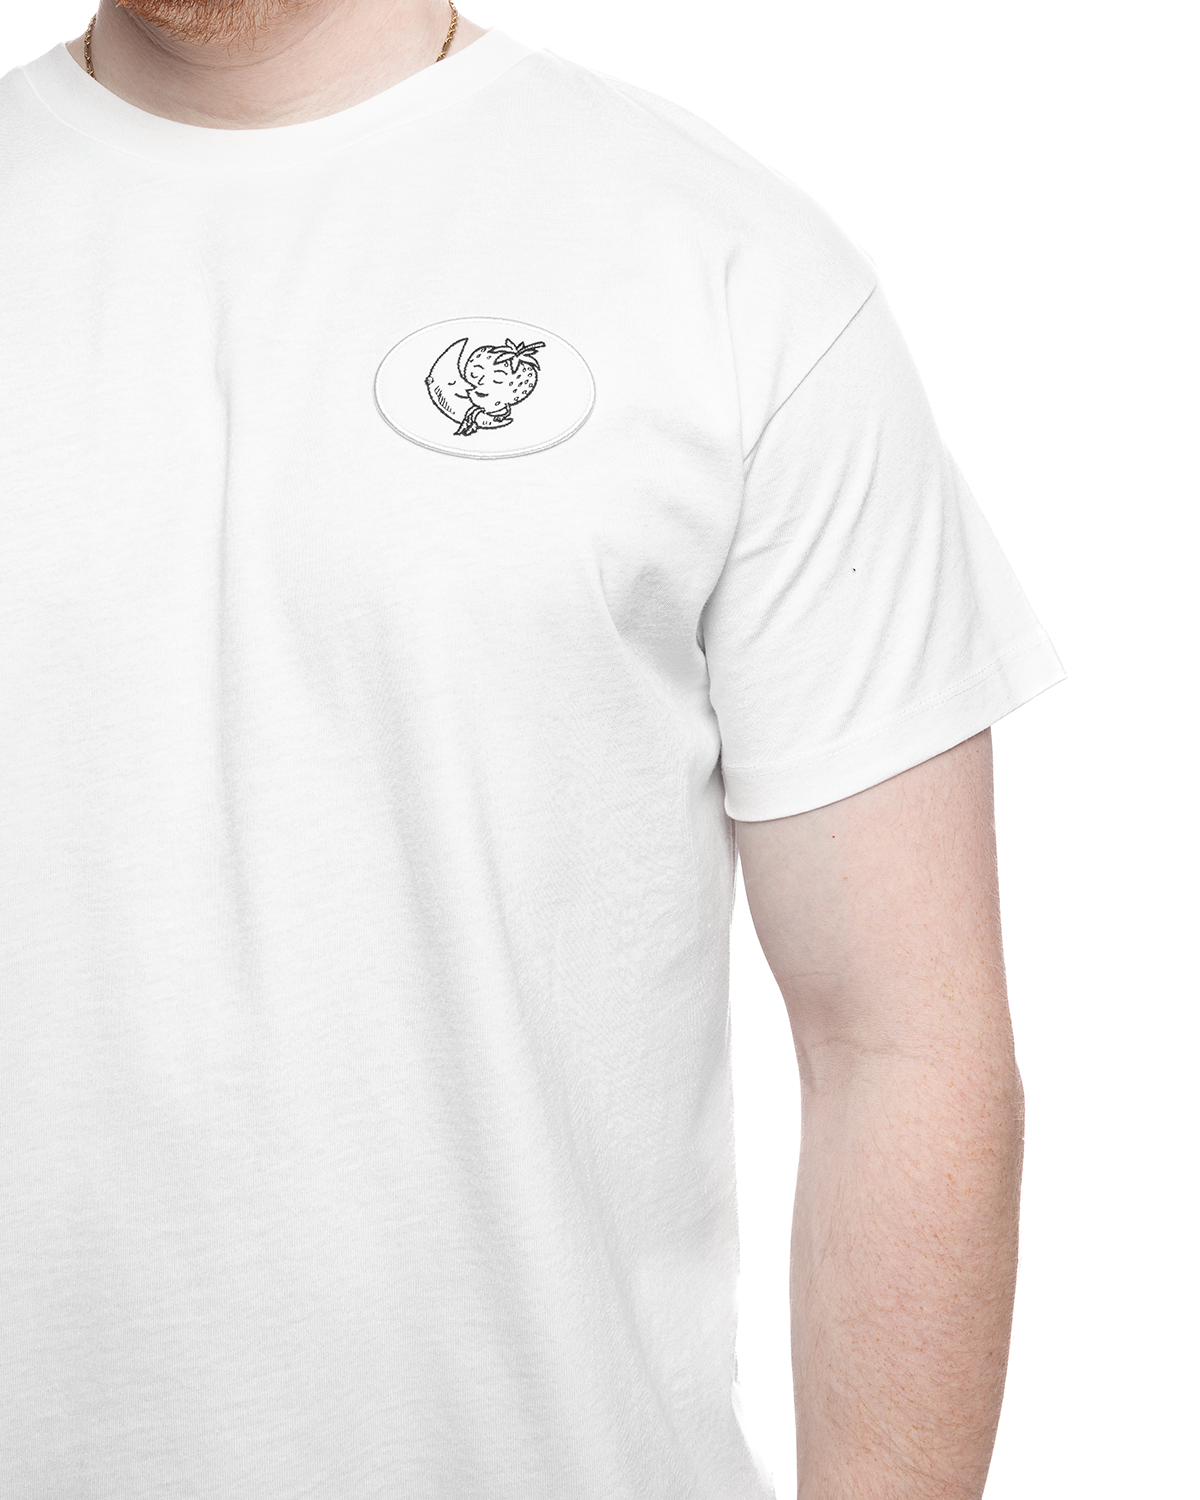 Unisex Alastair Mckimm Workwear T-Shirt Knit White